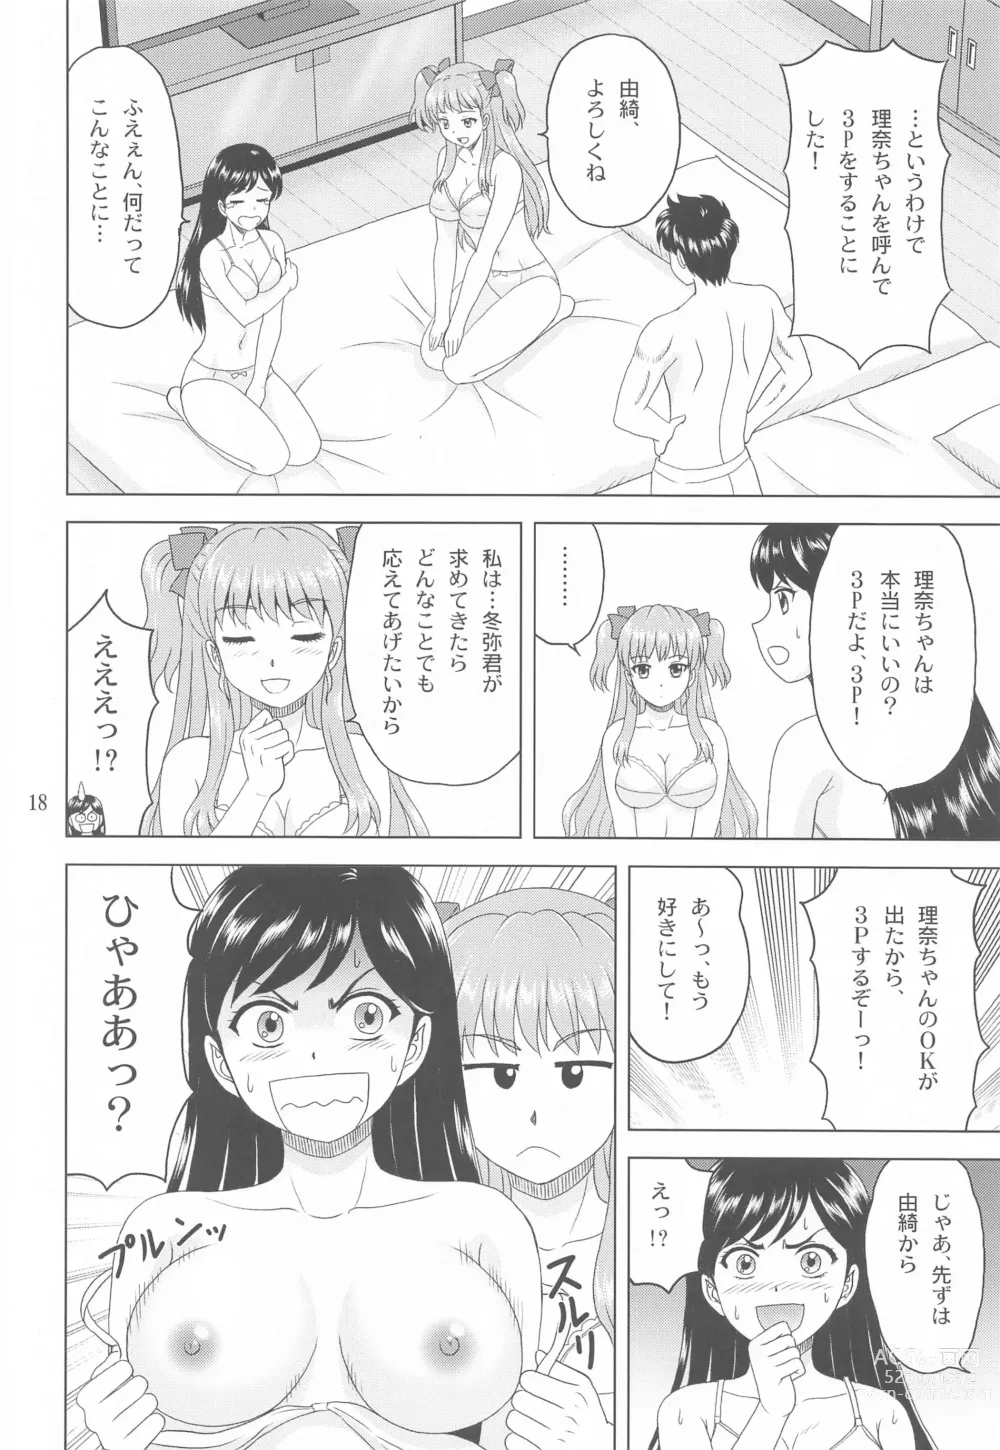 Page 17 of doujinshi Yuki mo Rina mo Kanojo